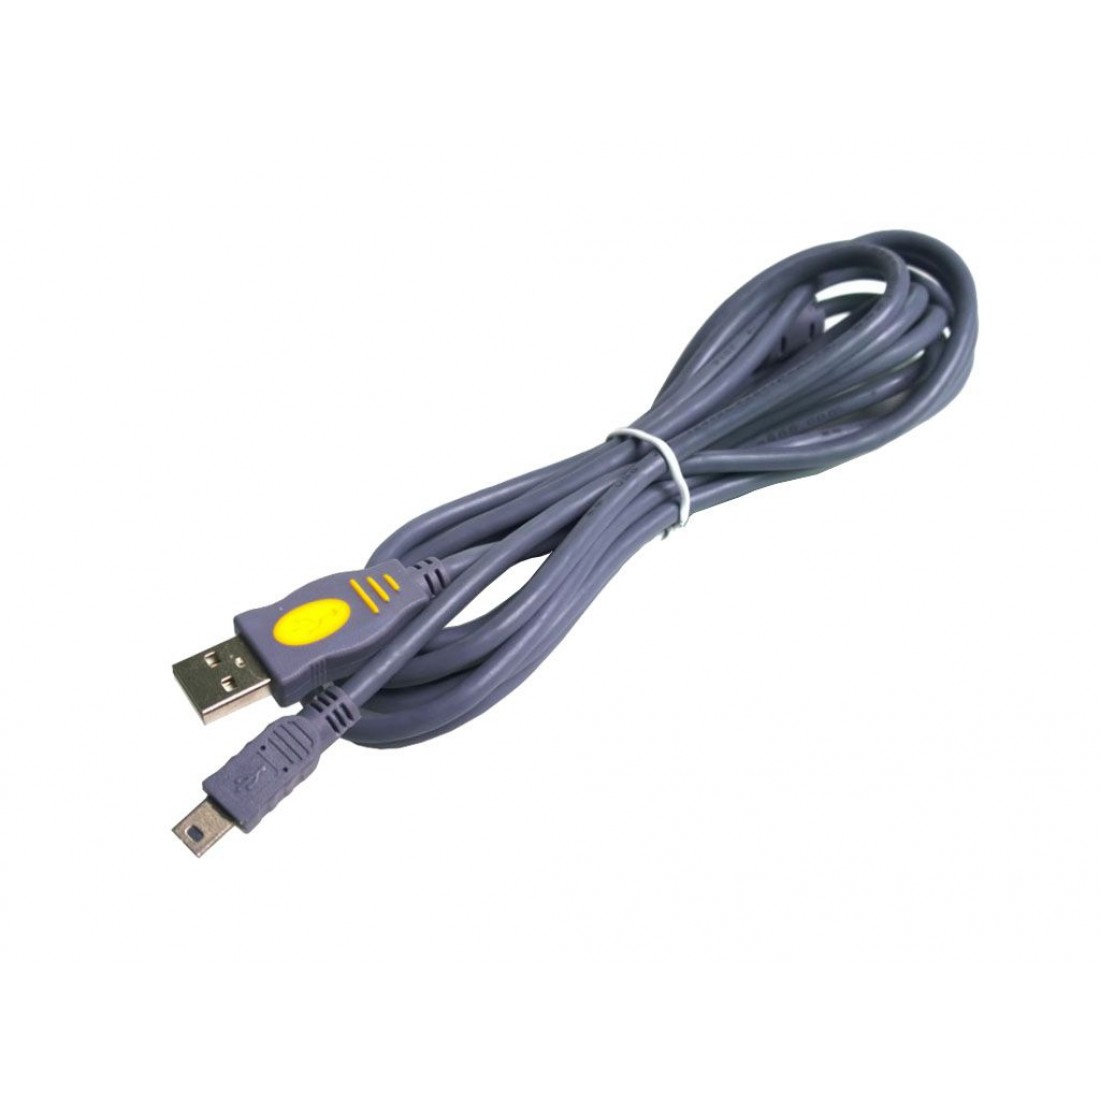 Easylap USB 2.0 Cable 5 Meter